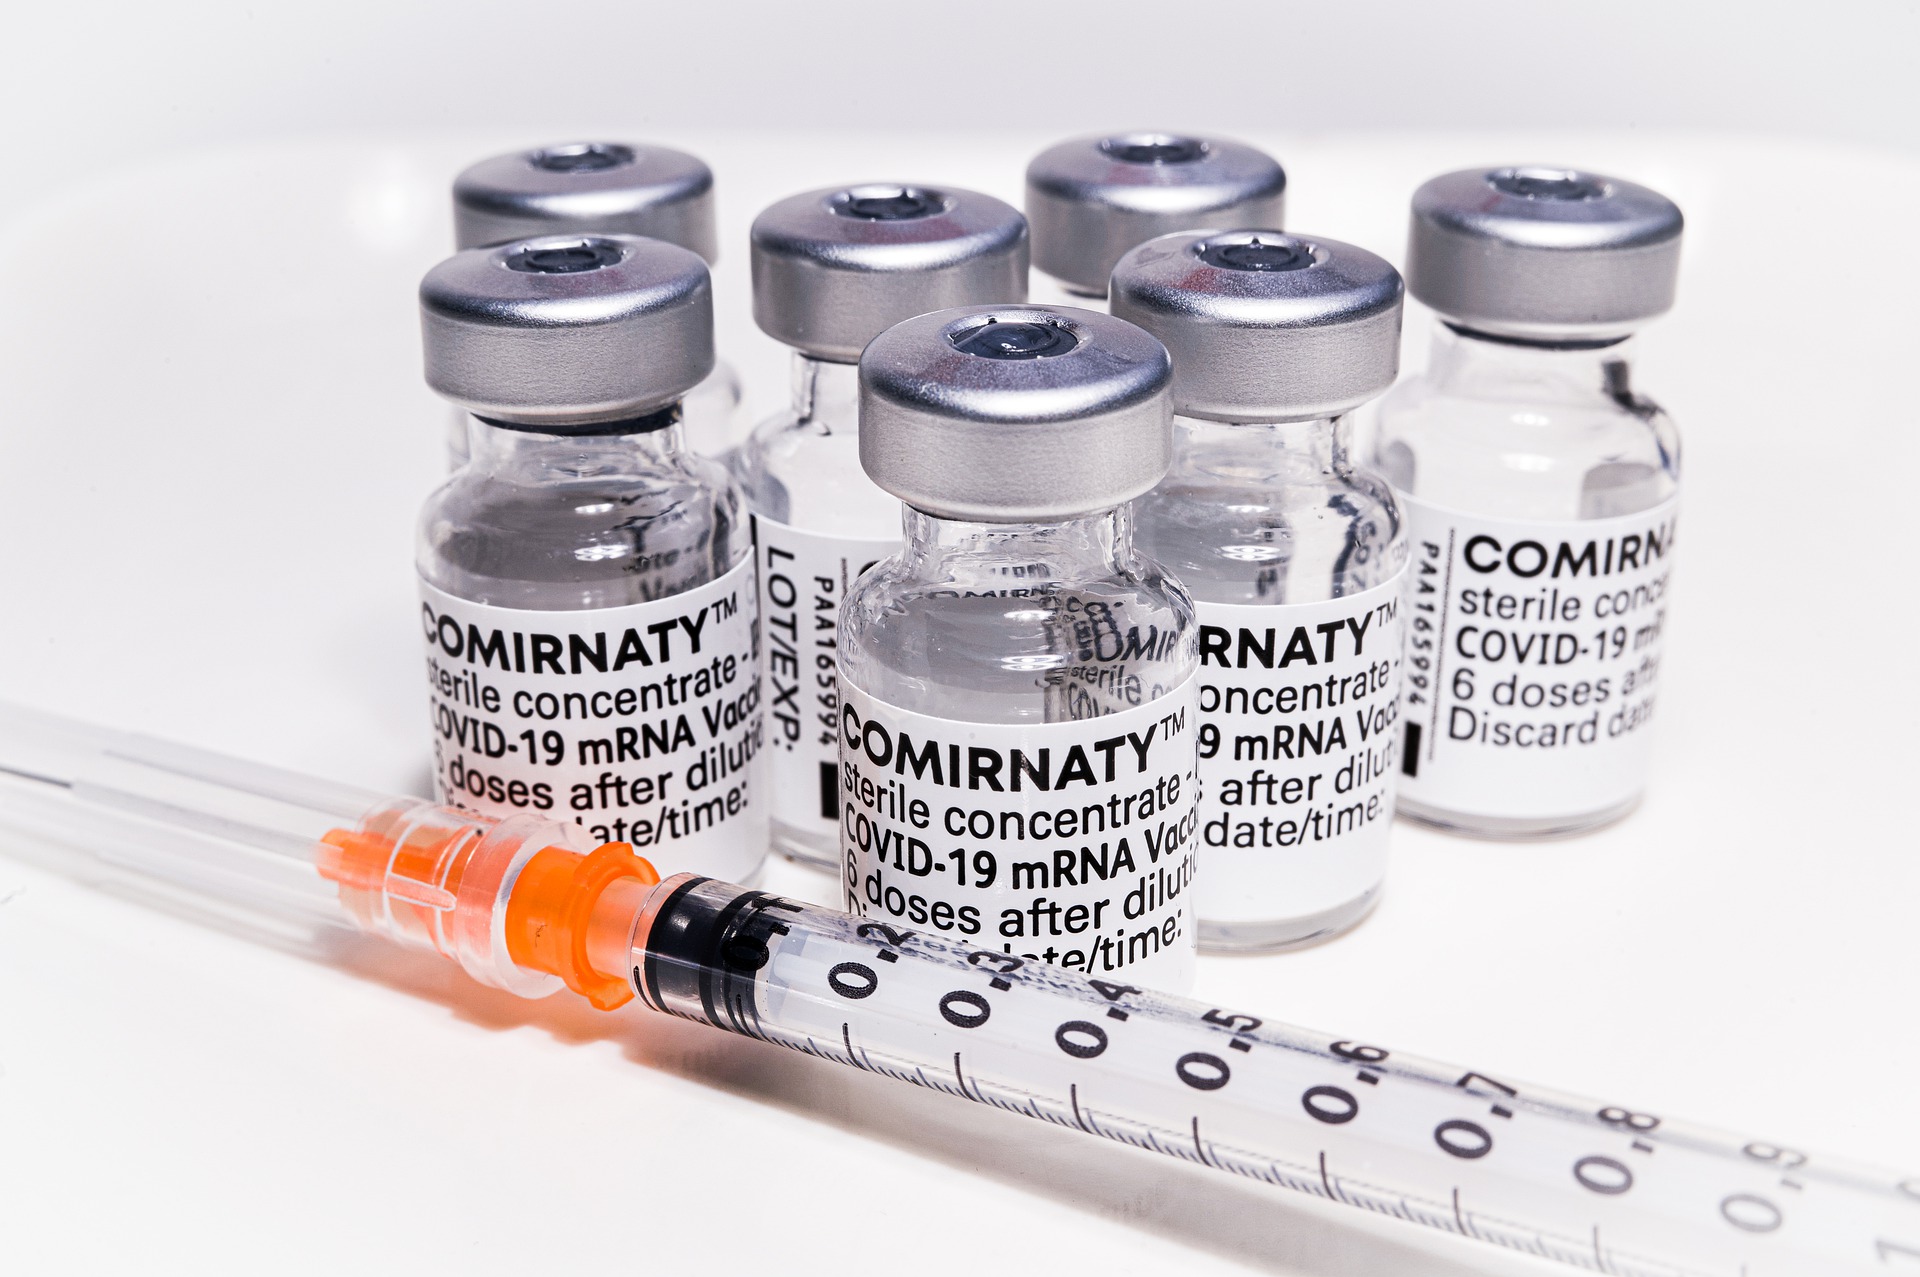 Sono circa 10 milioni le dose inutilizzate di vaccino Comirnaty di Pfizer BioNTech nel nostro Paese